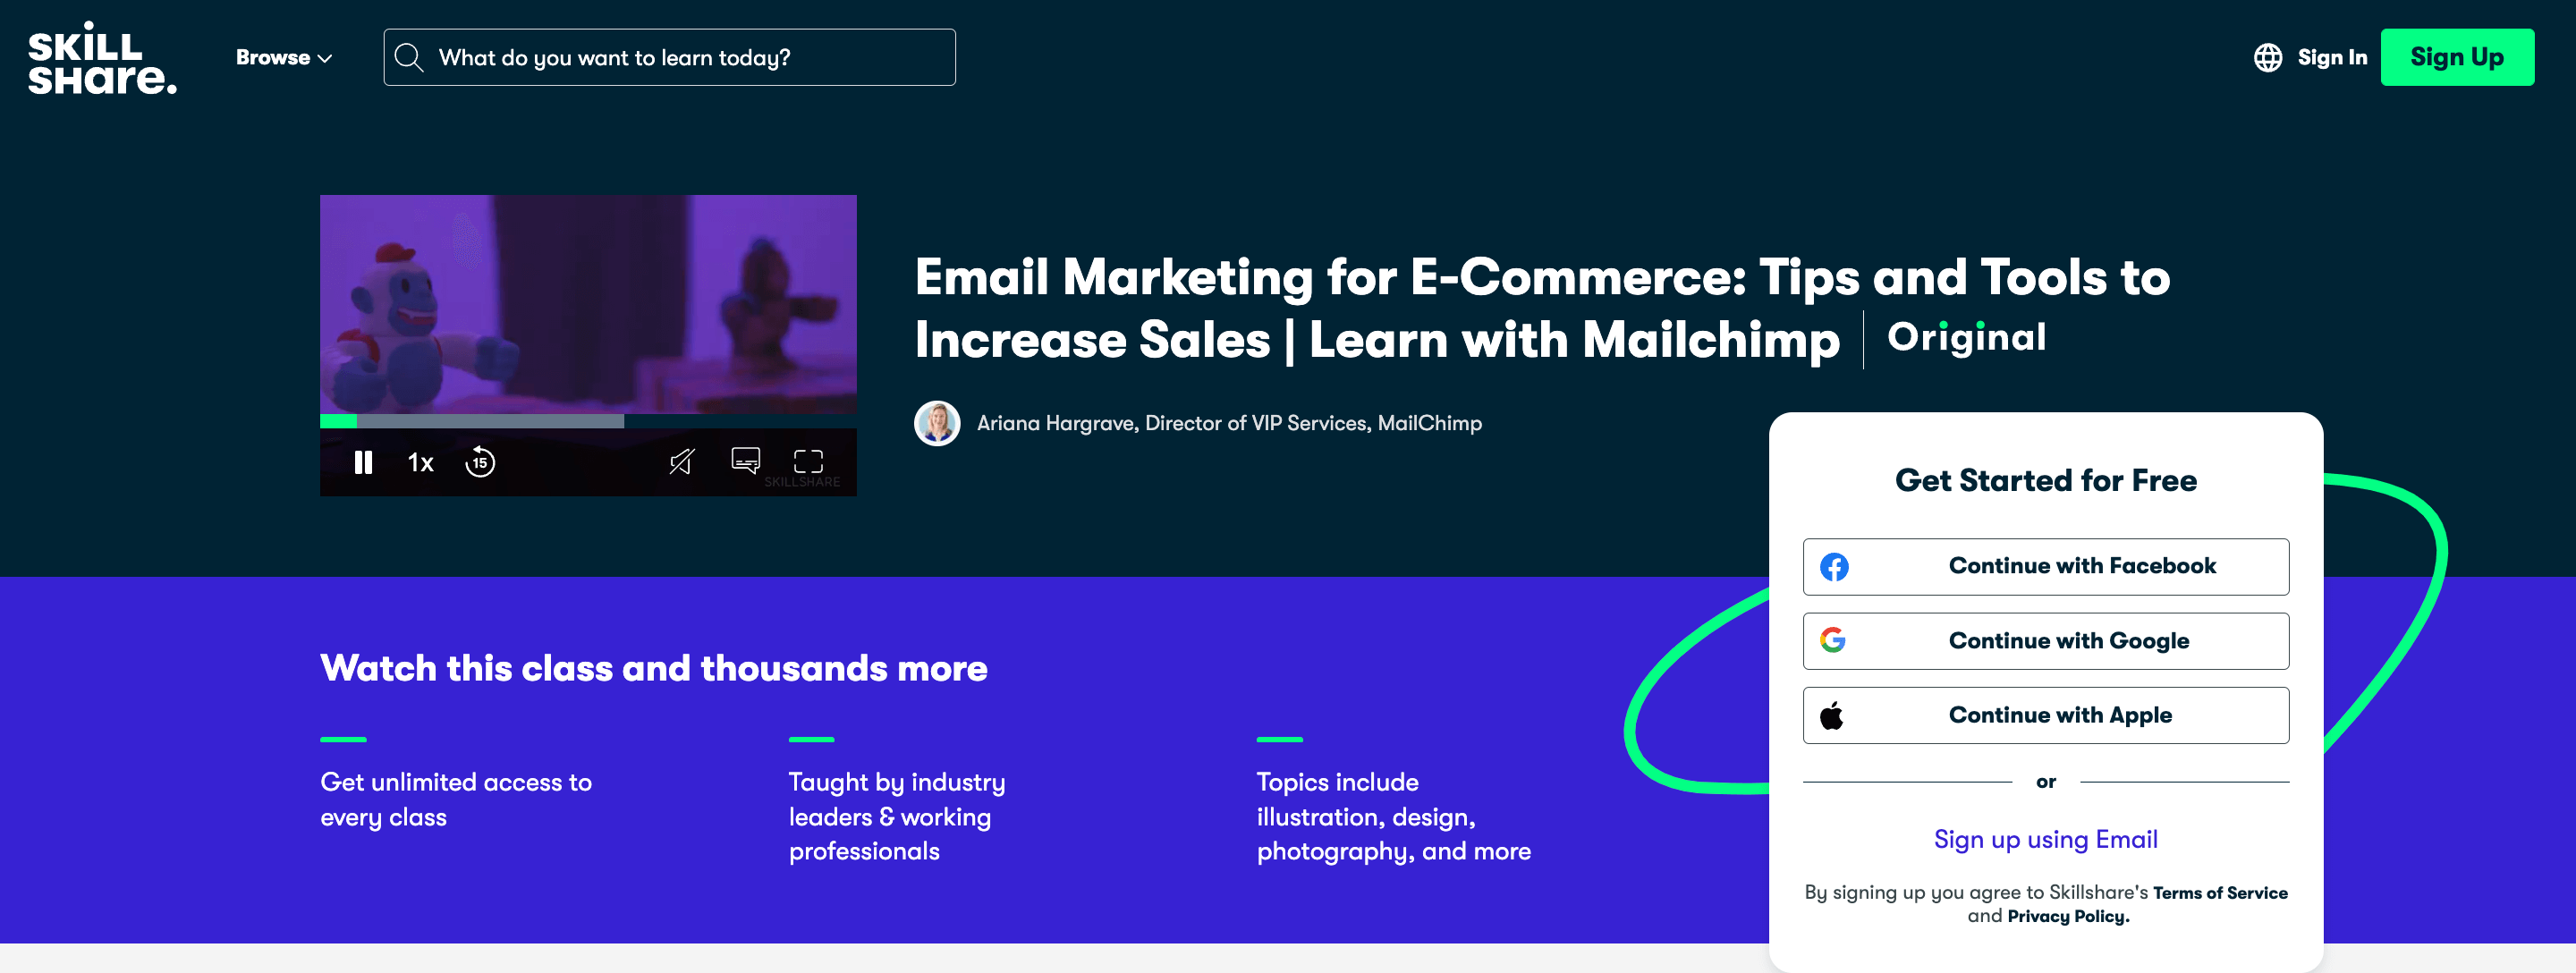 Screenshot of Skillshare's Email Marketing class